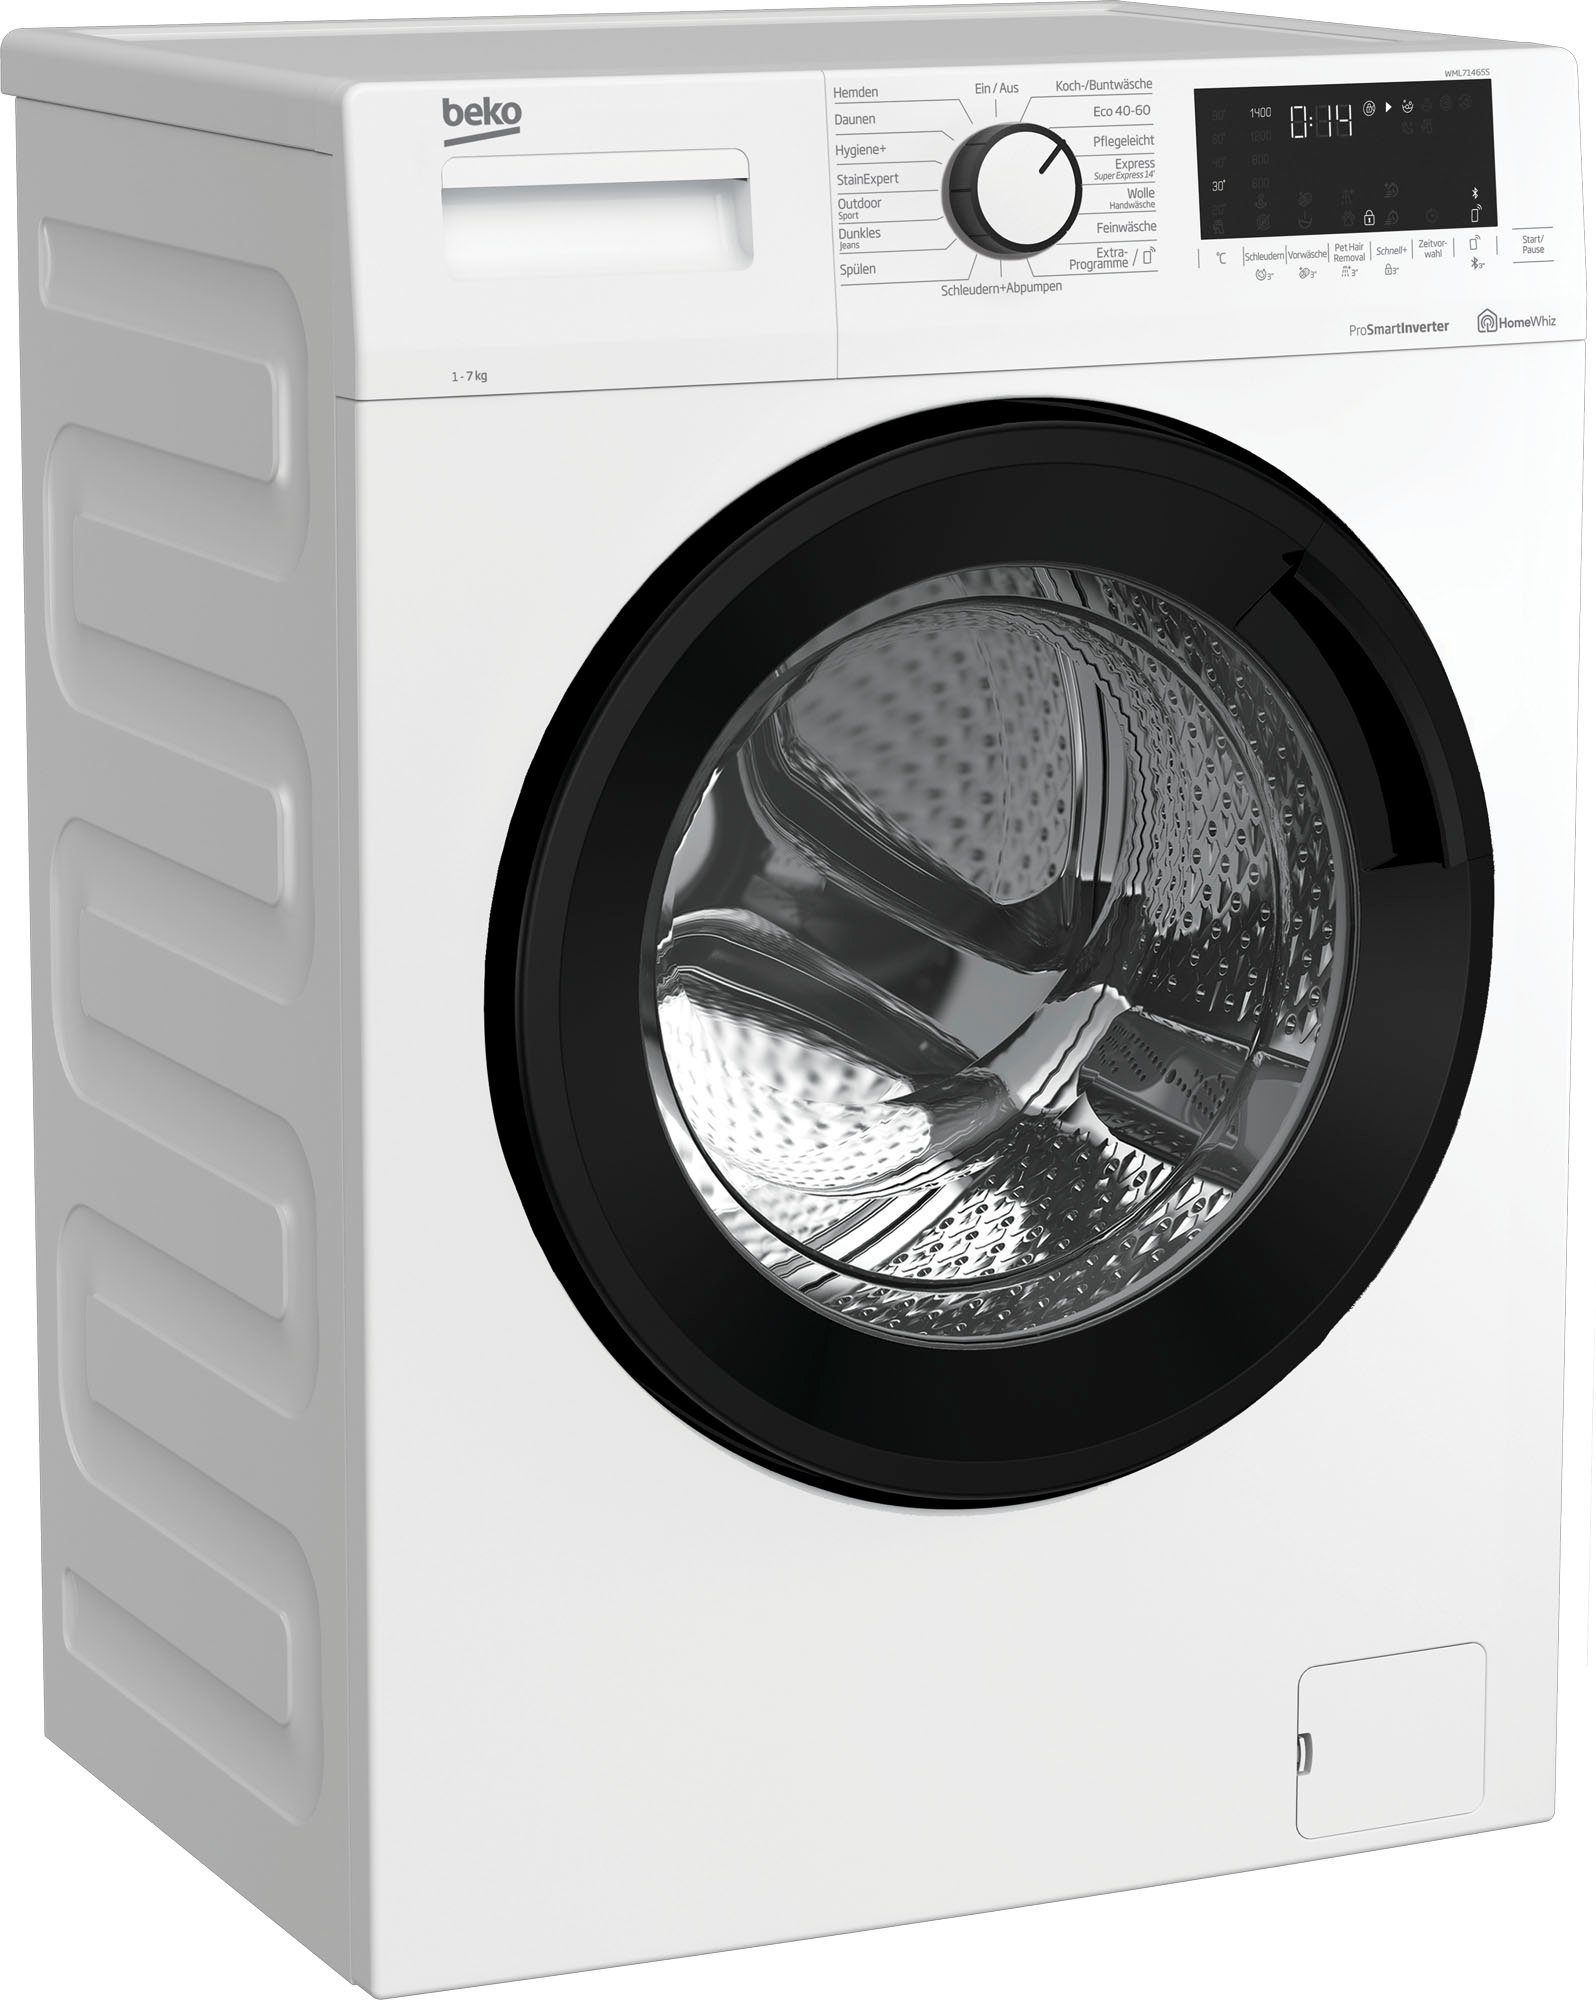 BEKO Waschmaschine WML71465S, 7 U/min 1400 kg